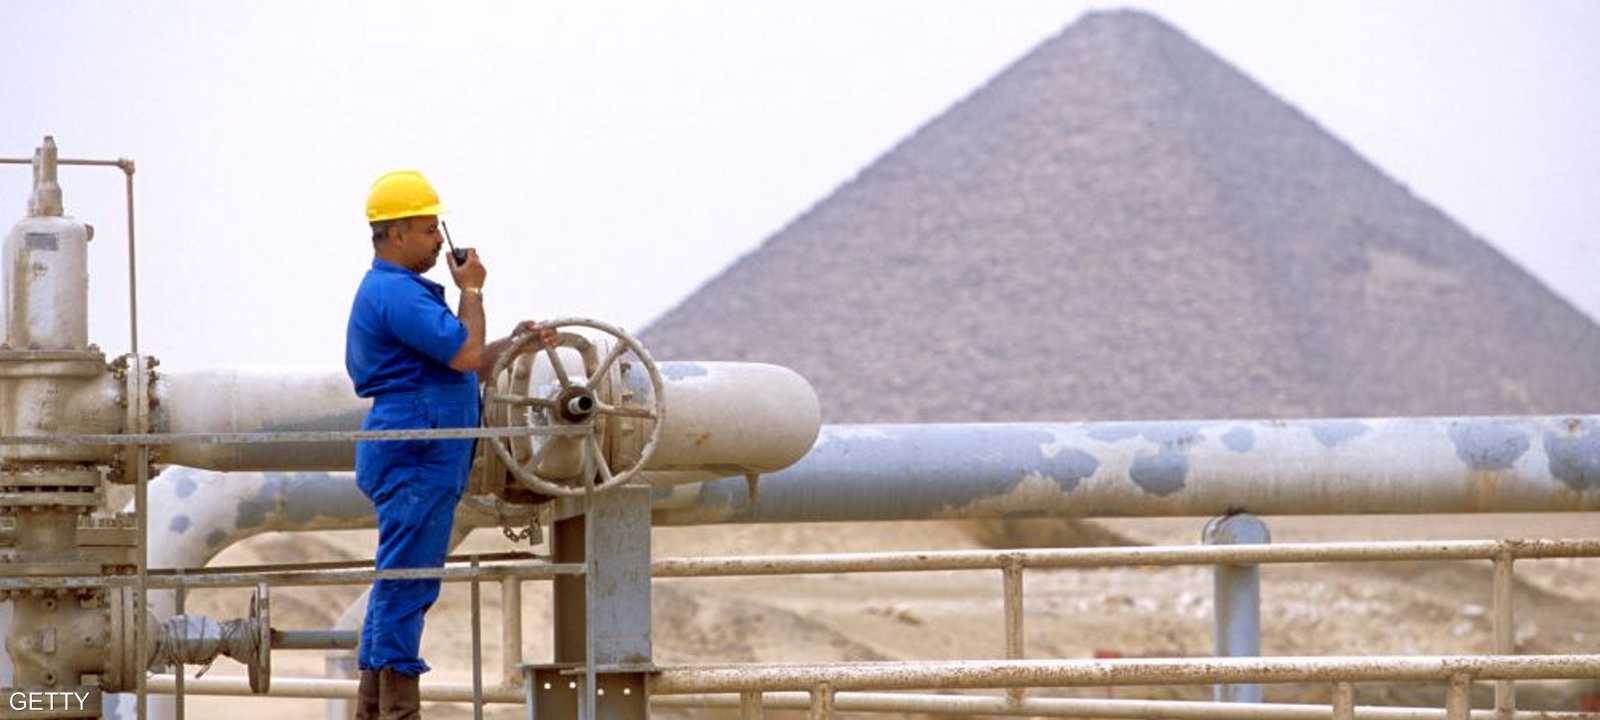 مصفاة لتكرير الغاز في صحراء مصر الغربية - أرشيف